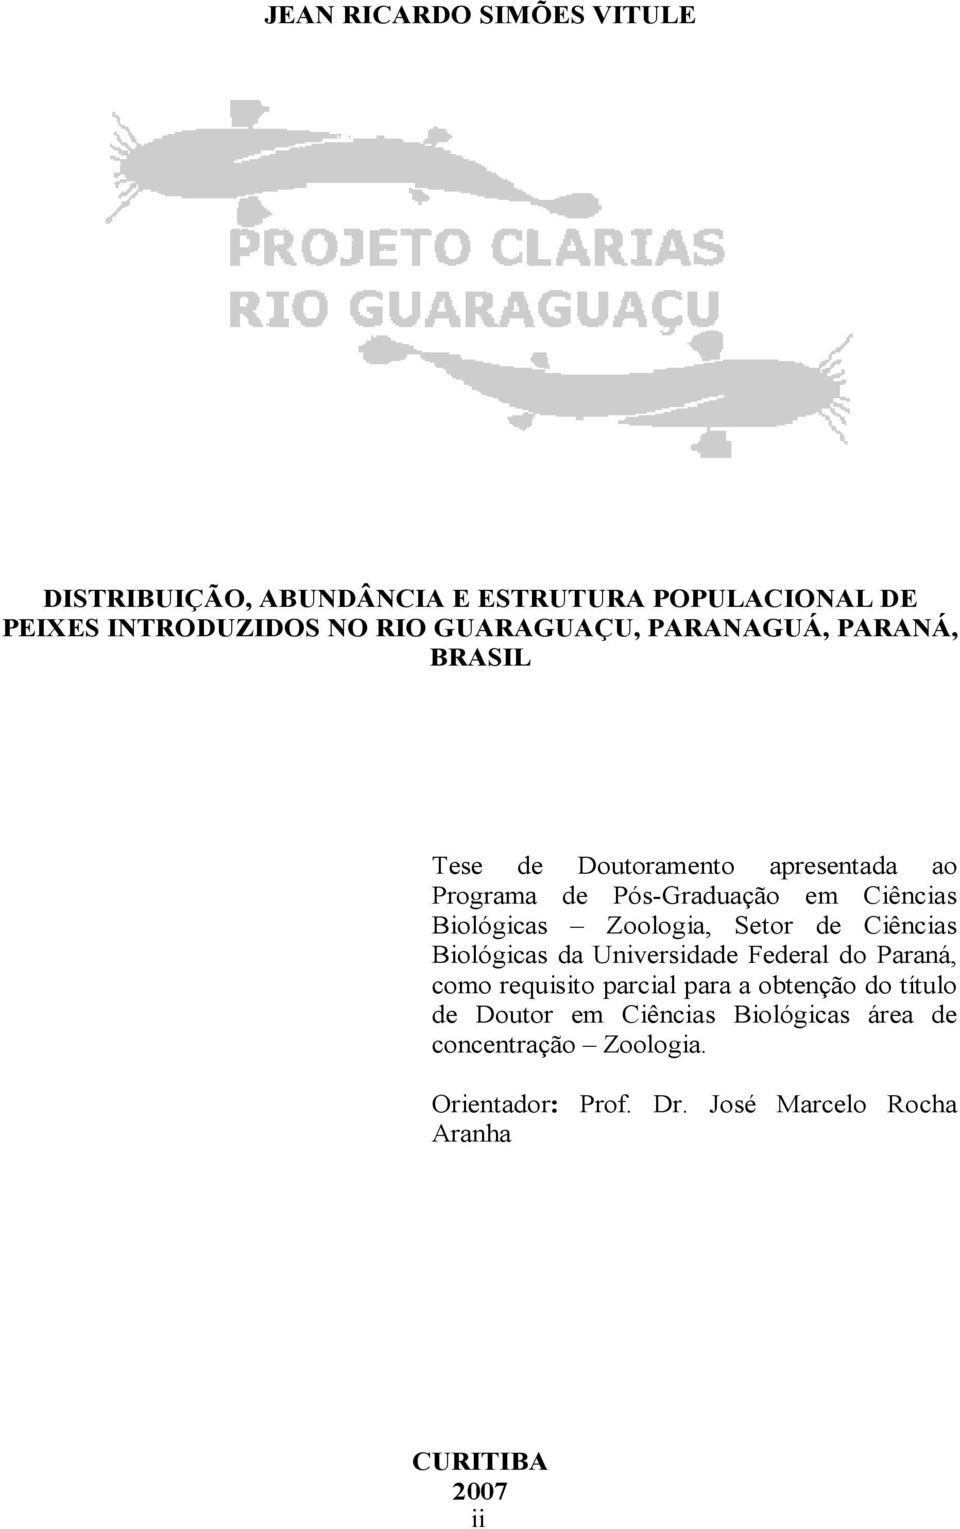 Setor de Ciências Biológicas da Universidade Federal do Paraná, como requisito parcial para a obtenção do título de